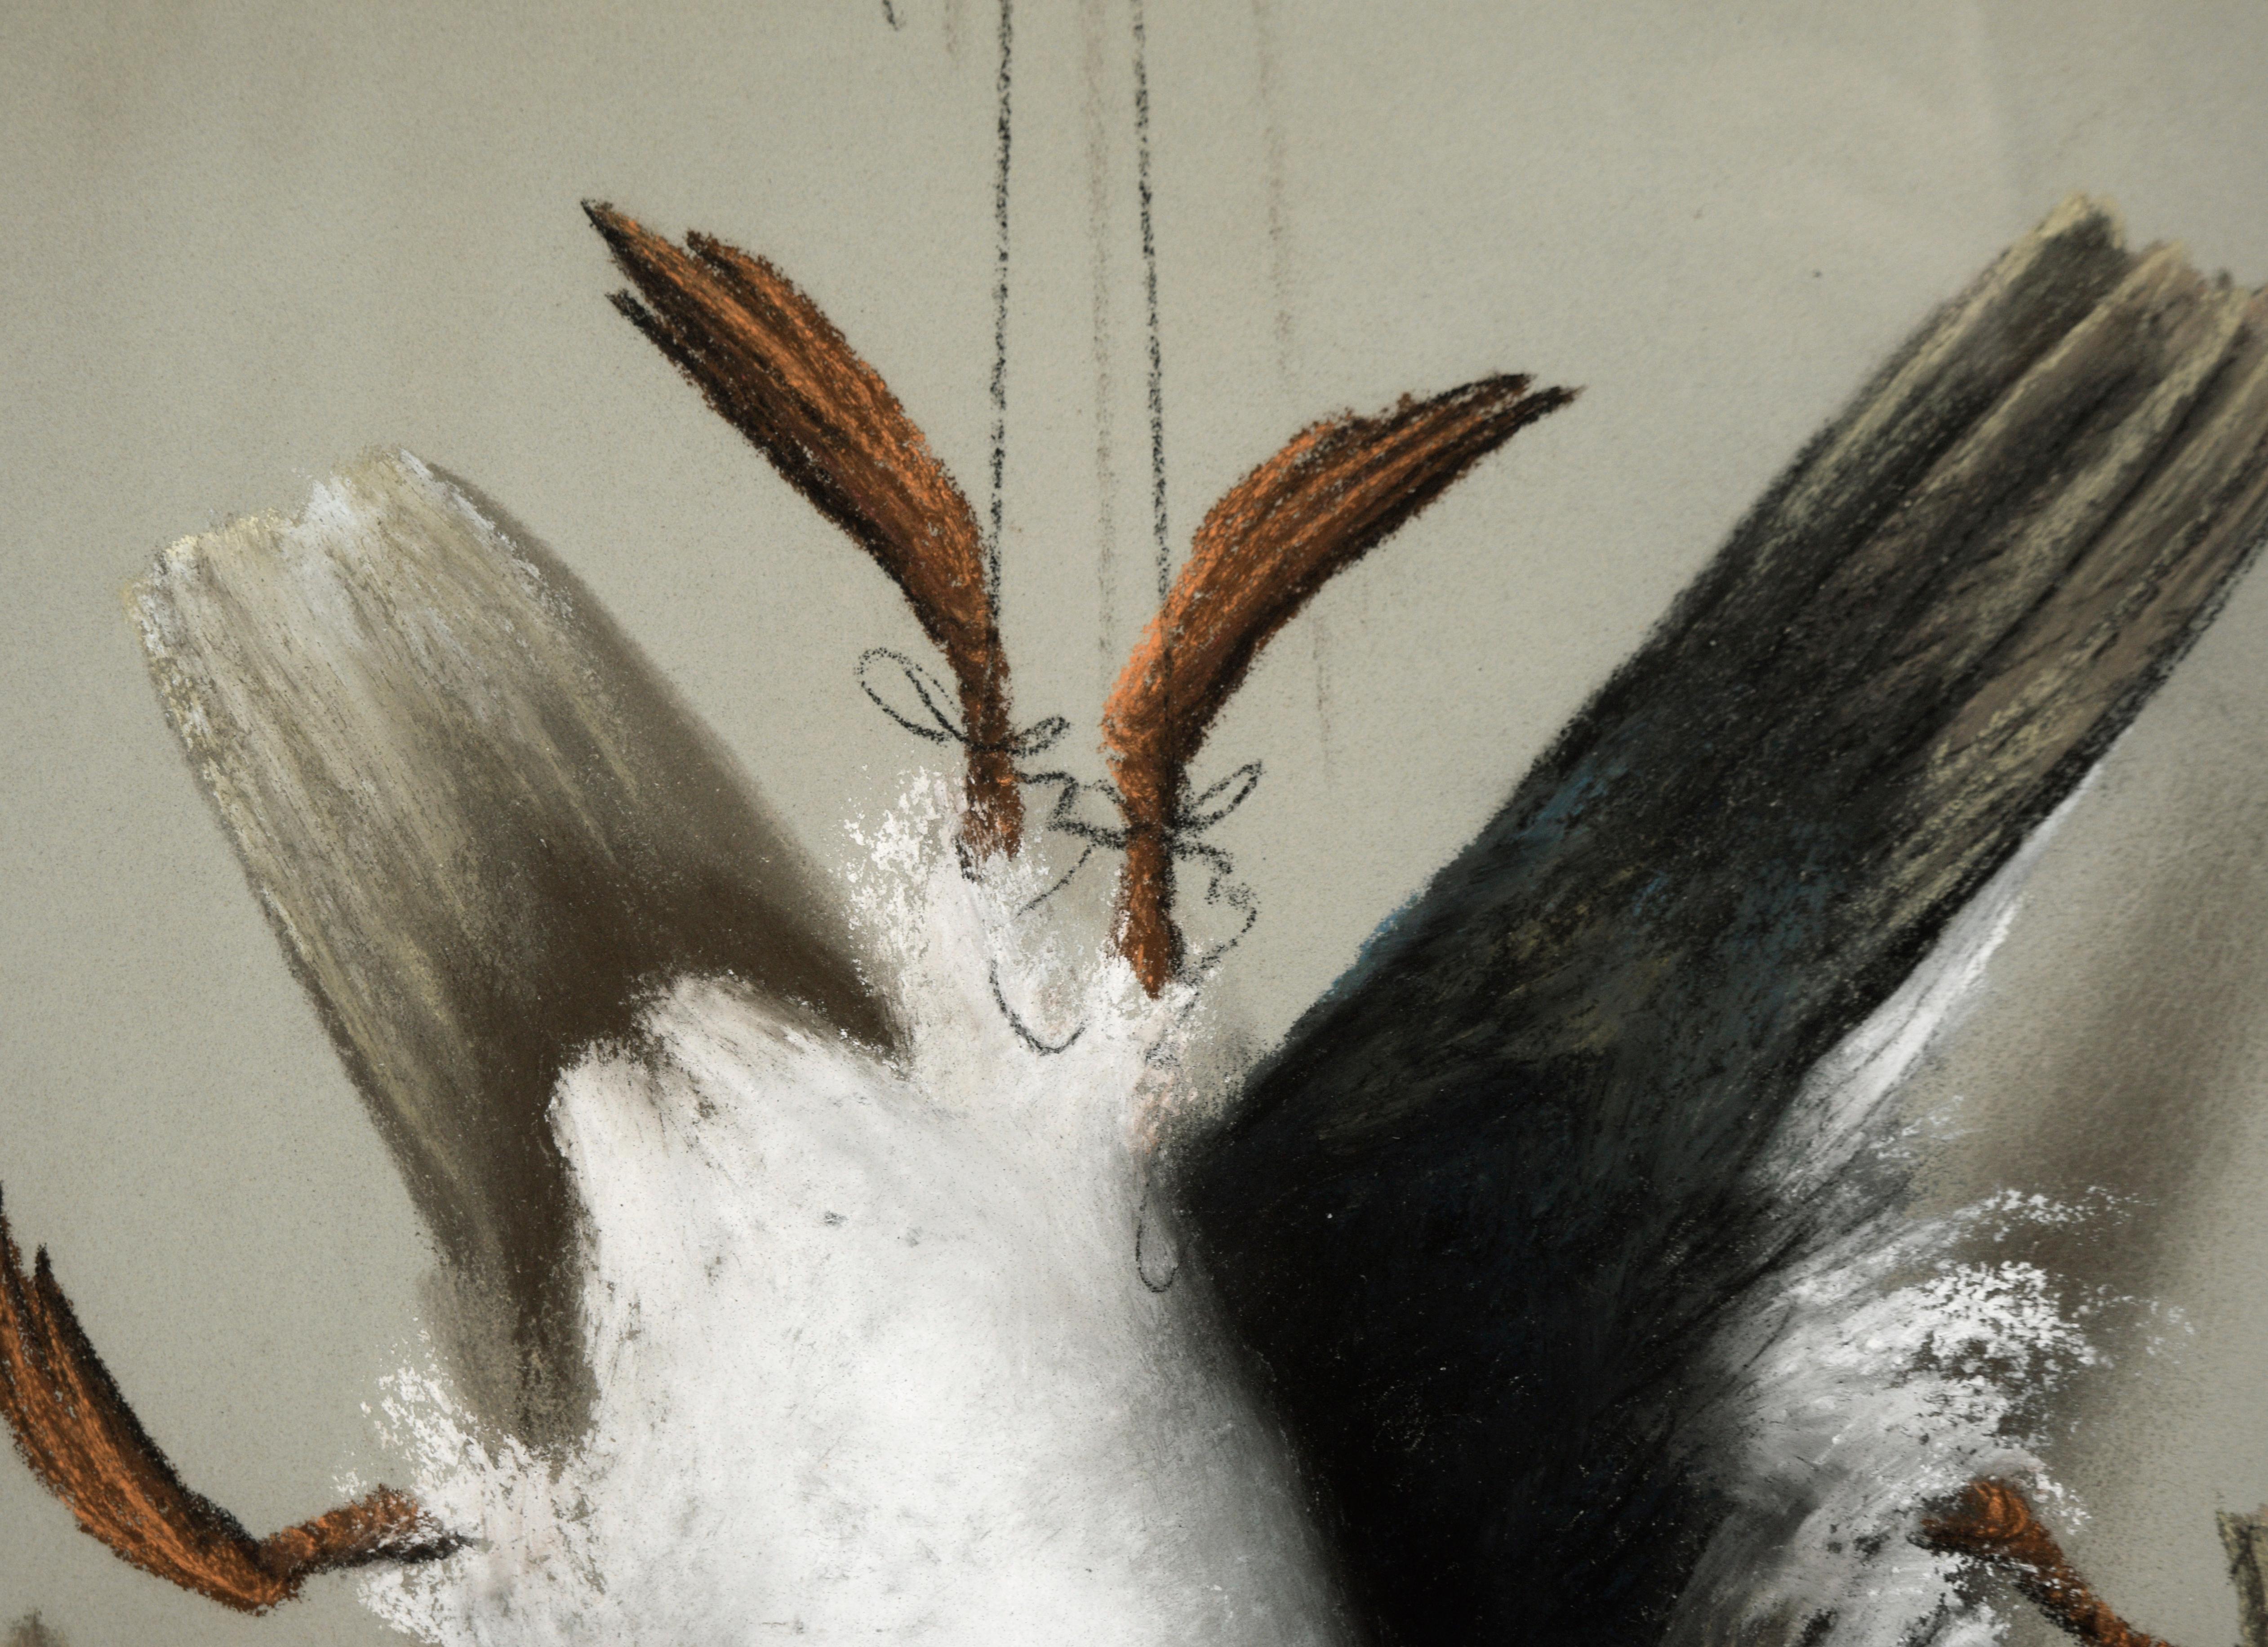 Deux canards - Style trompe-l'œil au pastel sur papier

Deux canards dans un style réaliste par LV Seely (19e siècle). Les oiseaux sont suspendus par les pattes, comme s'ils venaient d'être chassés. Les ombres projetées sur le mur et les oiseaux